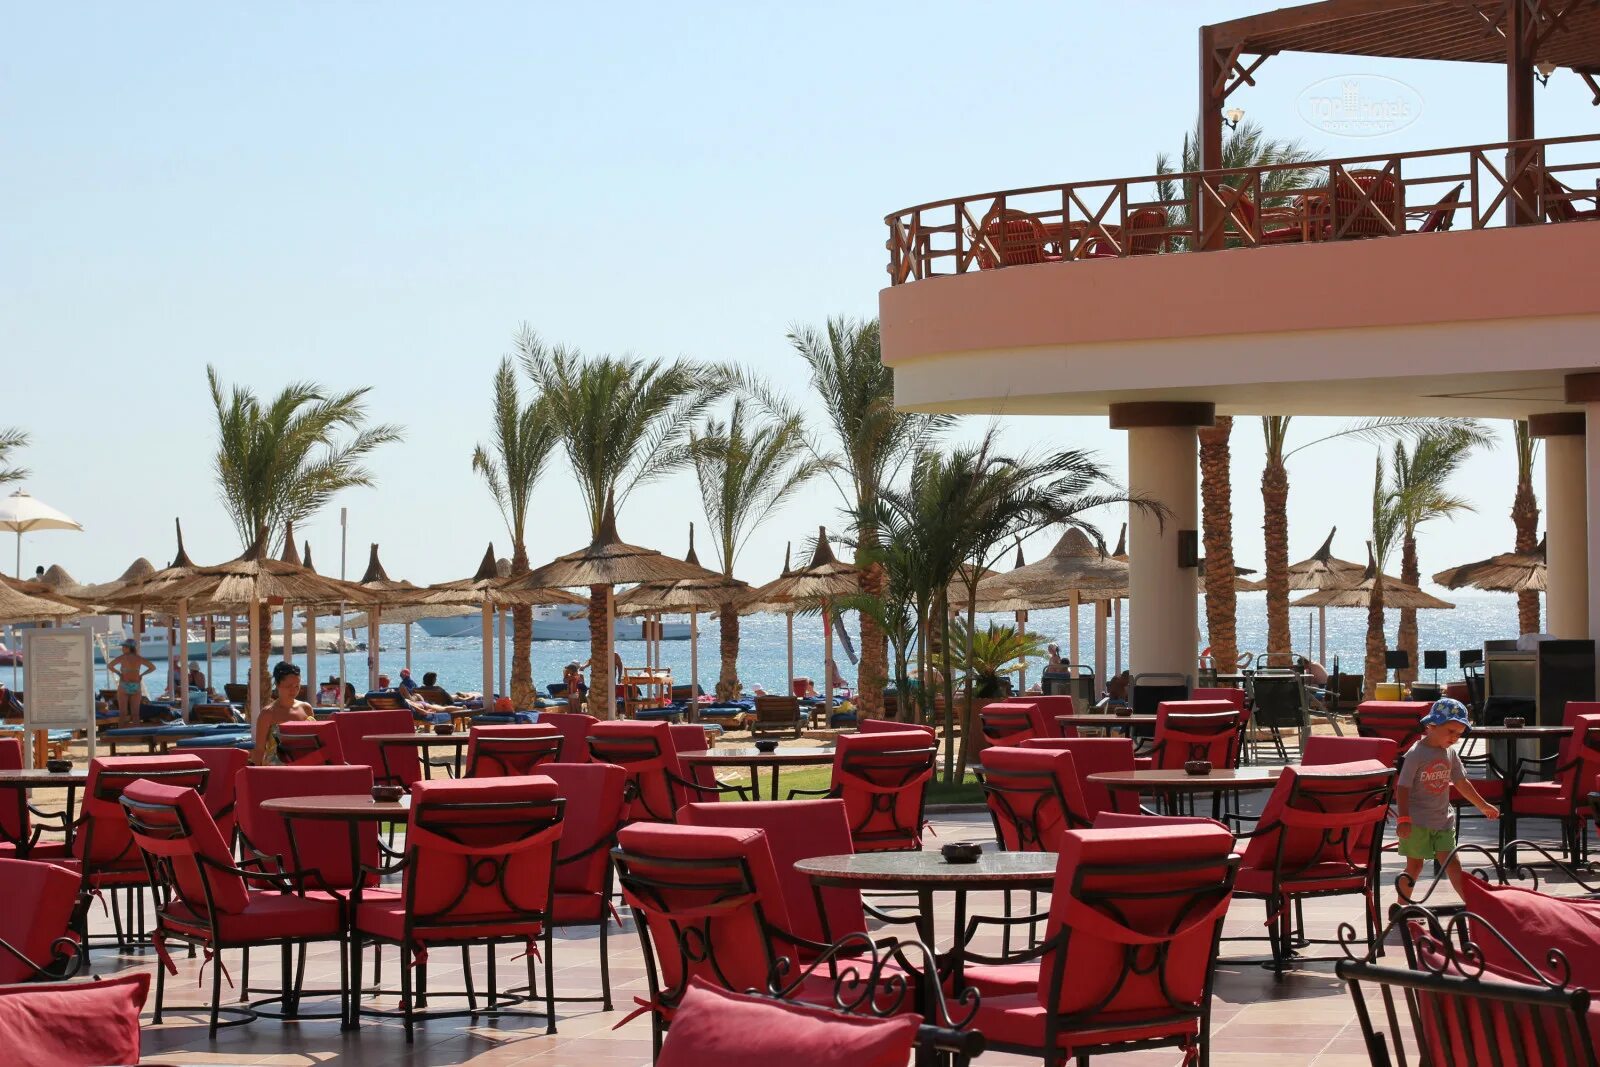 Отель Beach Albatros Resort 4. Хургада Beach Albatros Resort. Beach Albatros Resort Hurghada 4 Хургада. Отель в Египте Альбатрос Бич.